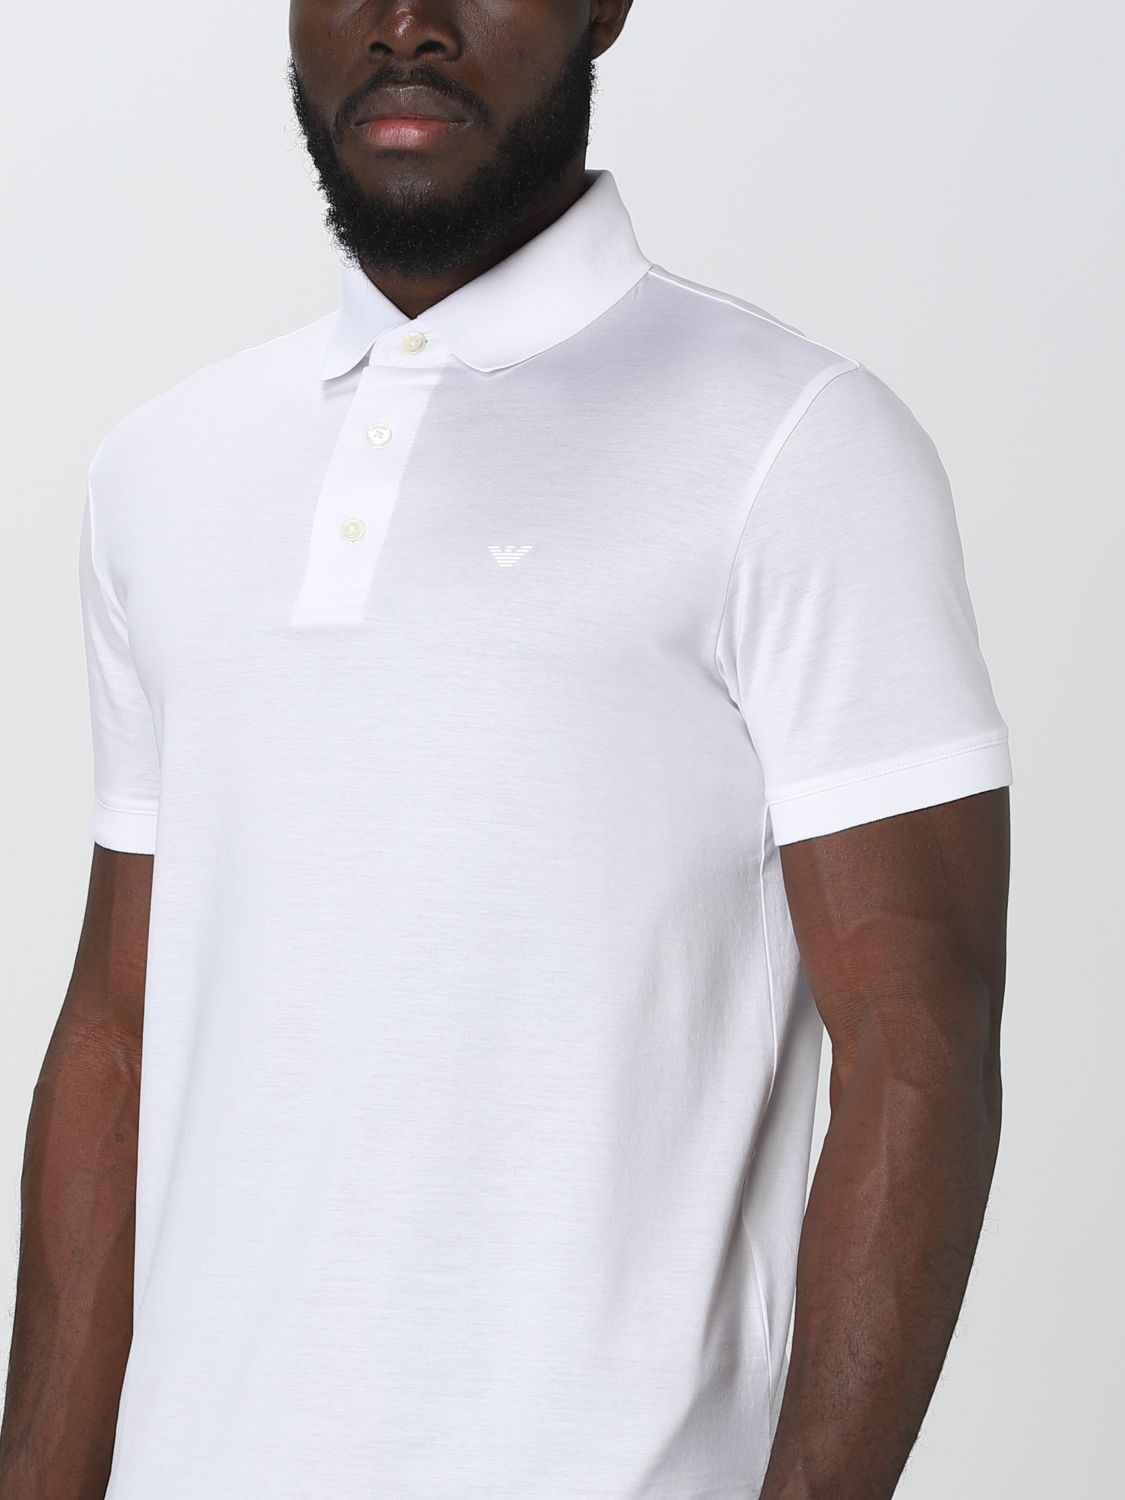 EMPORIO ARMANI: polo shirt for man - White | Emporio Armani polo shirt  8N1F981JUVZ online on 